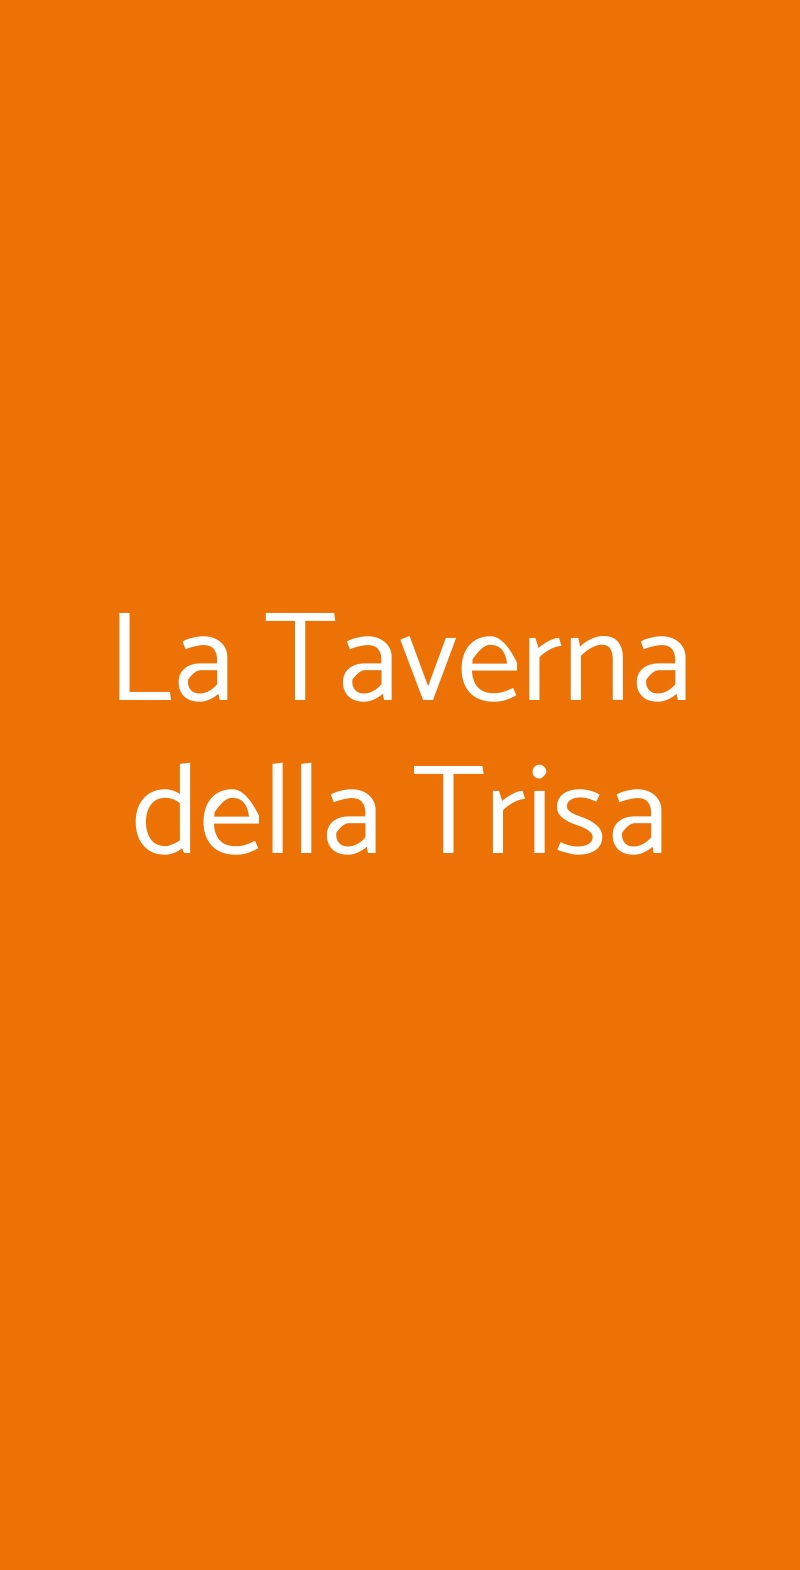 La Taverna della Trisa Milano menù 1 pagina